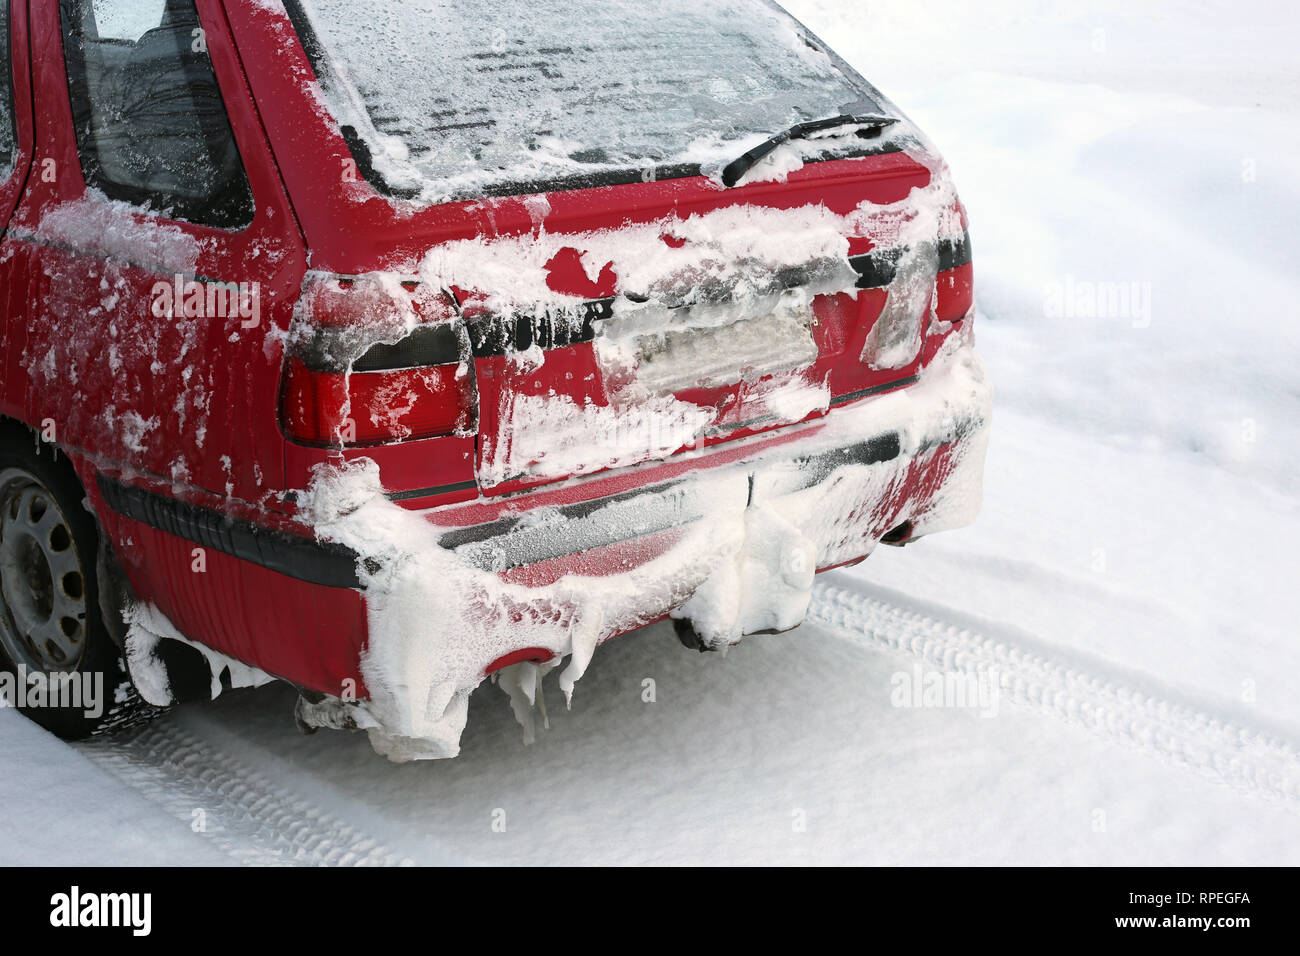 L'hiver en Europe. Vieille voiture rouge dans un parking à côté d'une forêt couverte de neige. Il y a beaucoup de nature neige autour de la voiture. Photo de jour. Banque D'Images